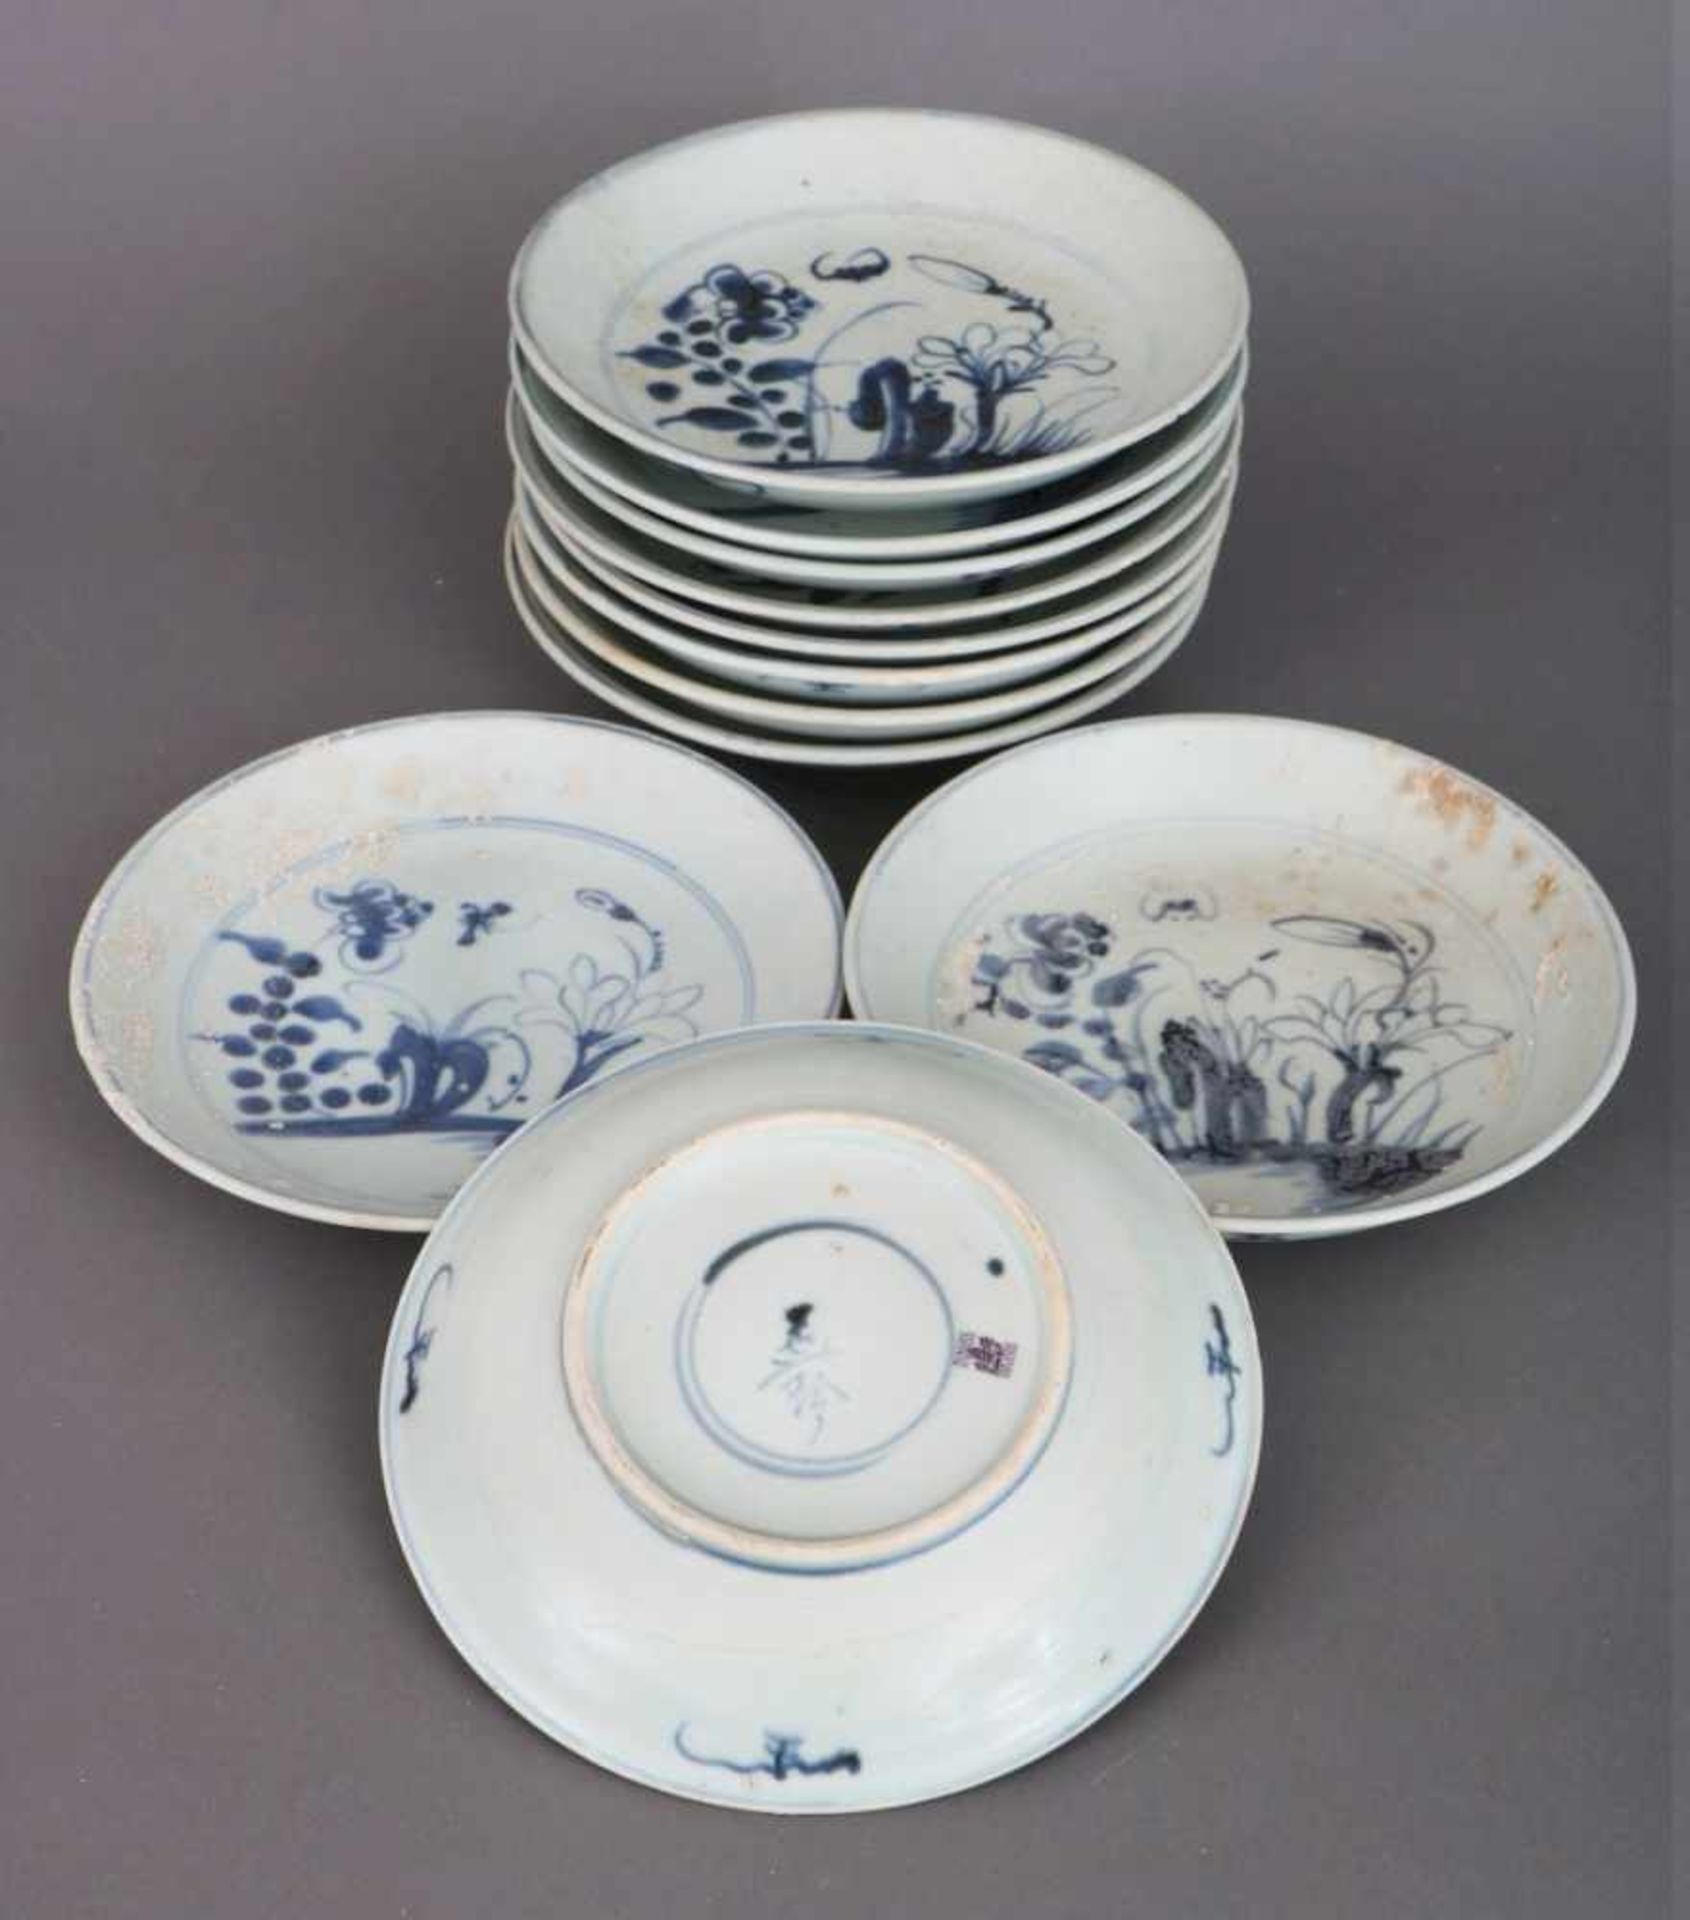 11 chinesiche Teller von der ¨Tek Sing¨hell glasiertes Porzellan mit asiatischer Blaumalerei, 19.